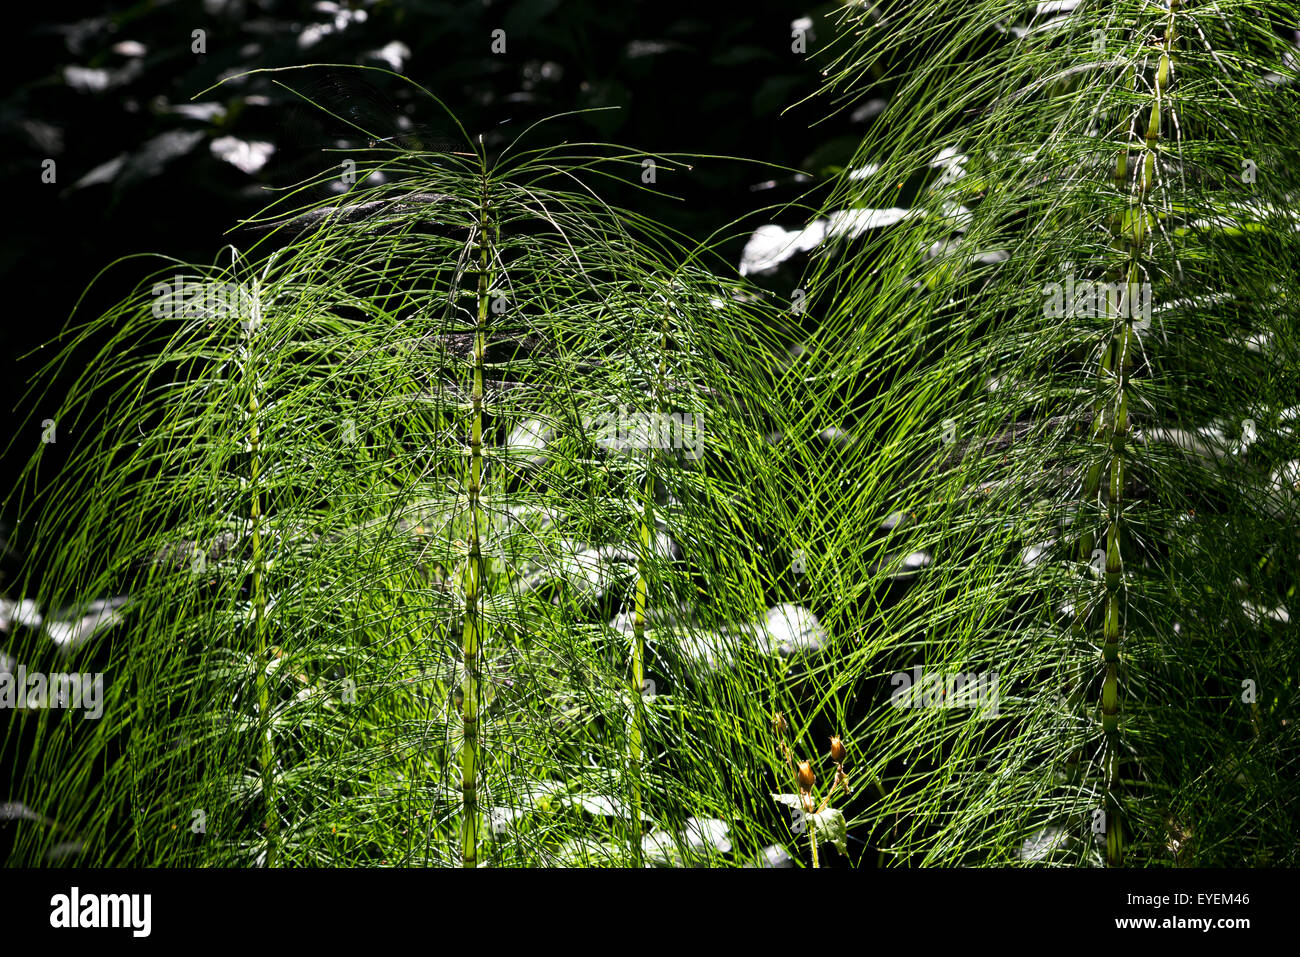 Pferd-Tail in einer englischen Wald wachsen. Starken Kontrast der Beleuchtung. Stockfoto